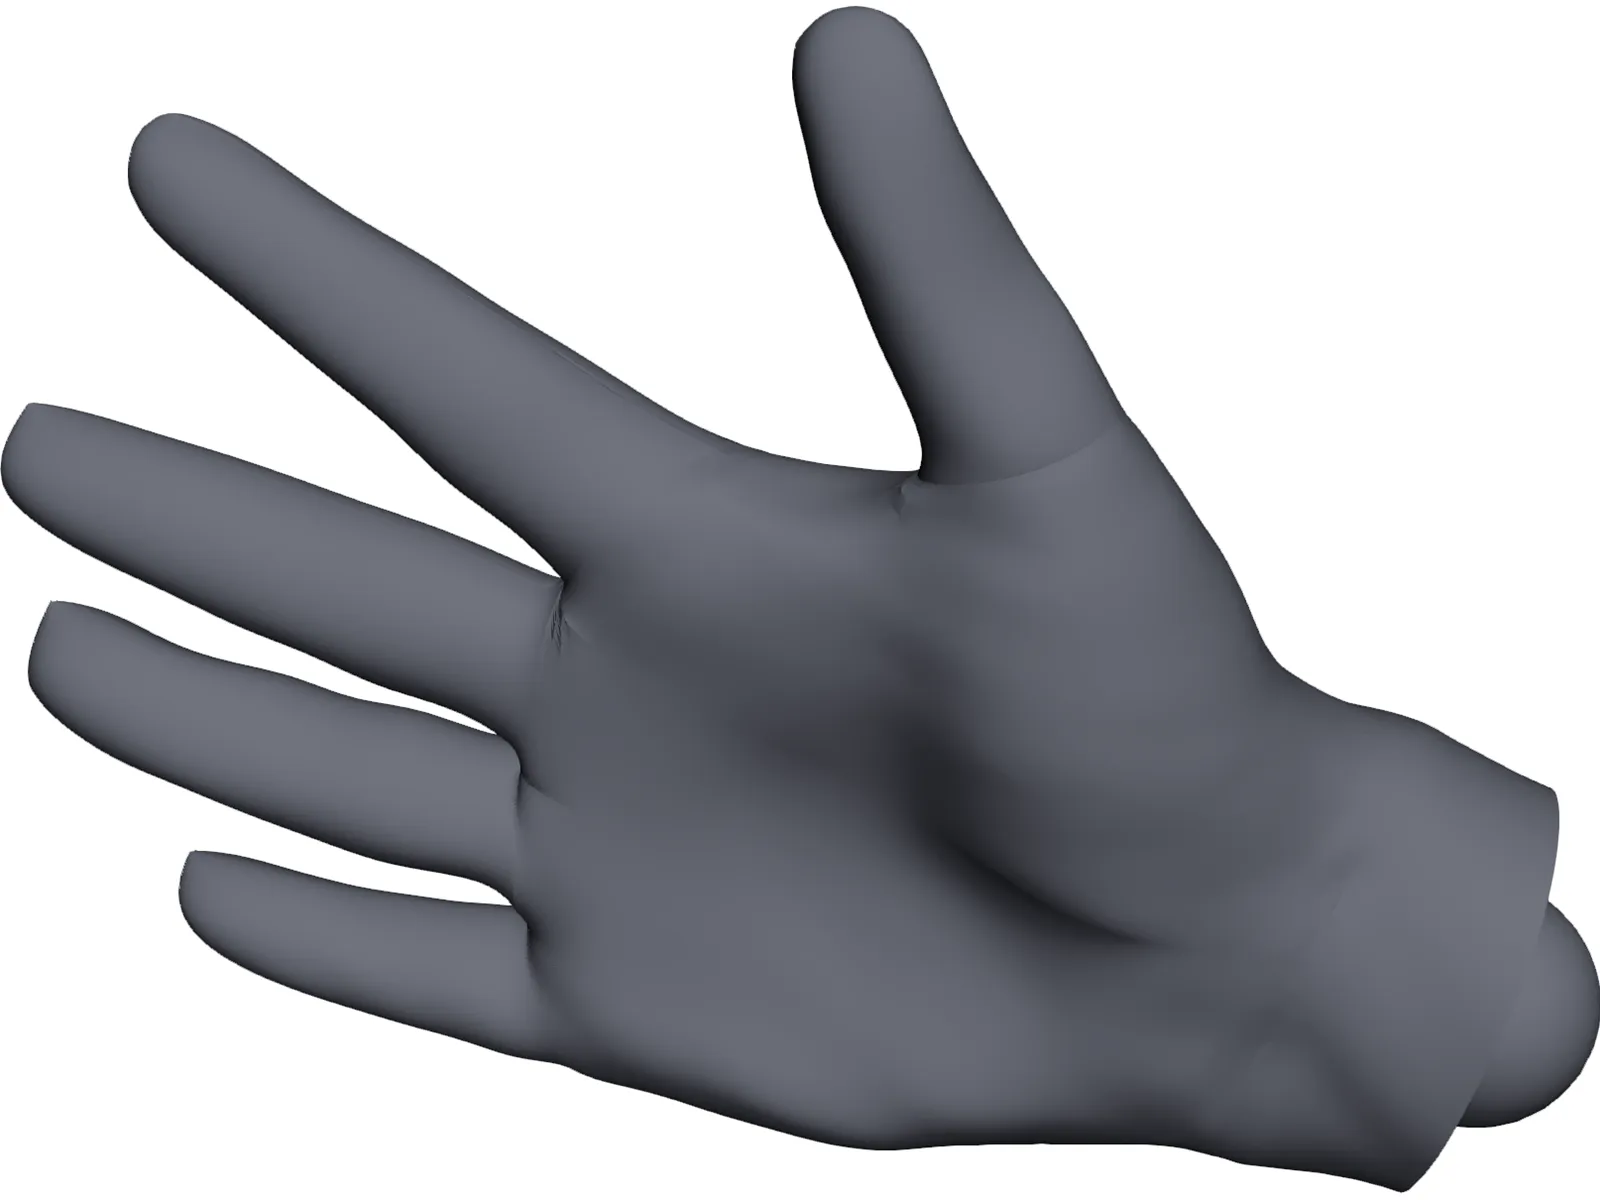 Human Hand 3D Model